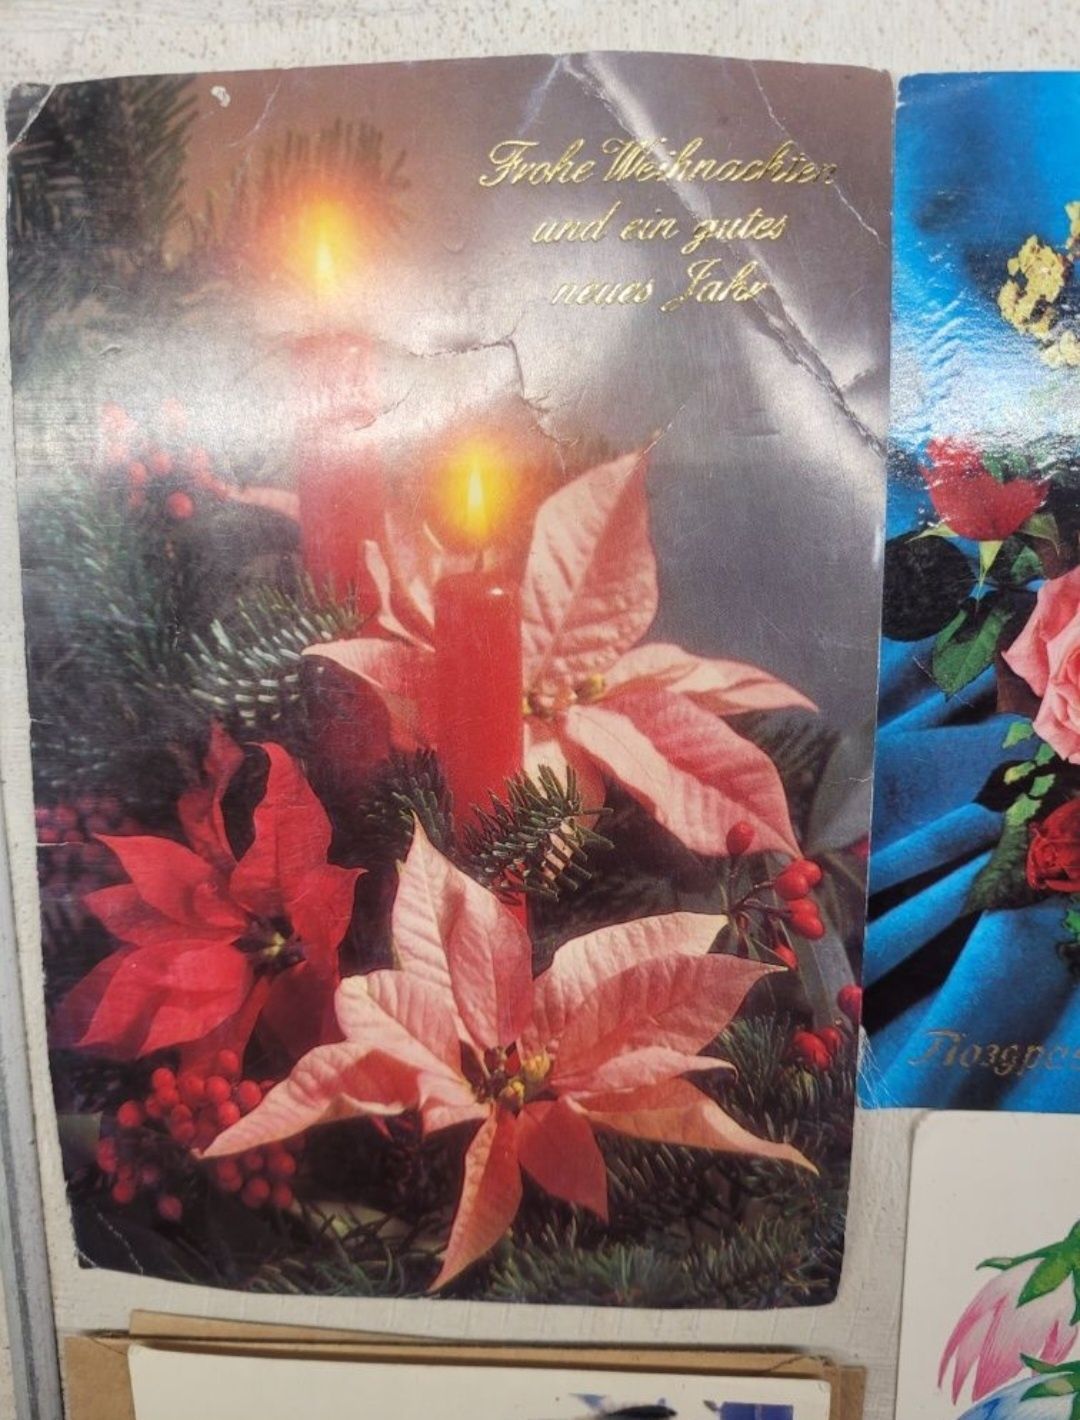 Советские открытки Календар щомісячник 1985 рік набор Ульяновск 1976 г